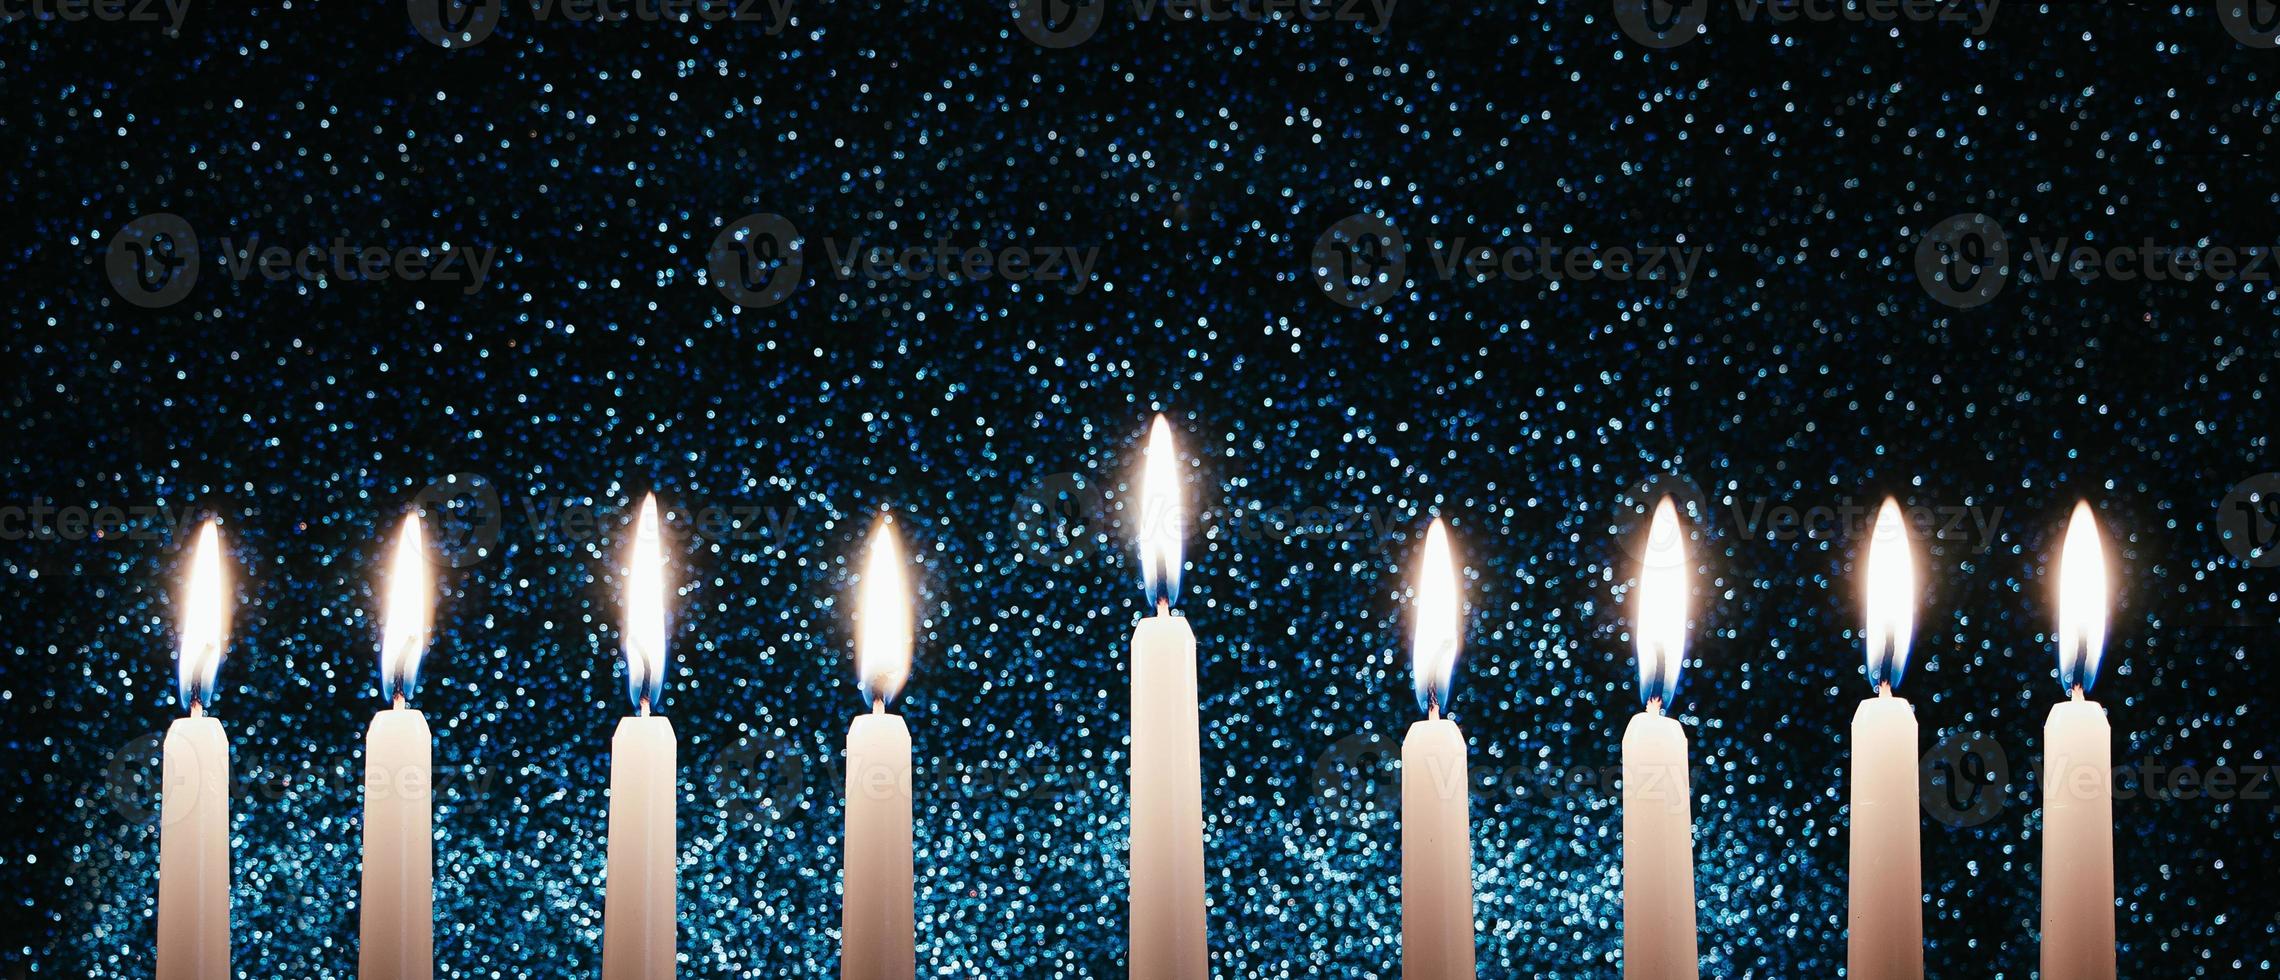 Chanukka-Kerzen. traditioneller Kandelaber mit brennenden Kerzen auf schwarzem Hintergrund. feiern religiösen jüdischen feiertag. foto